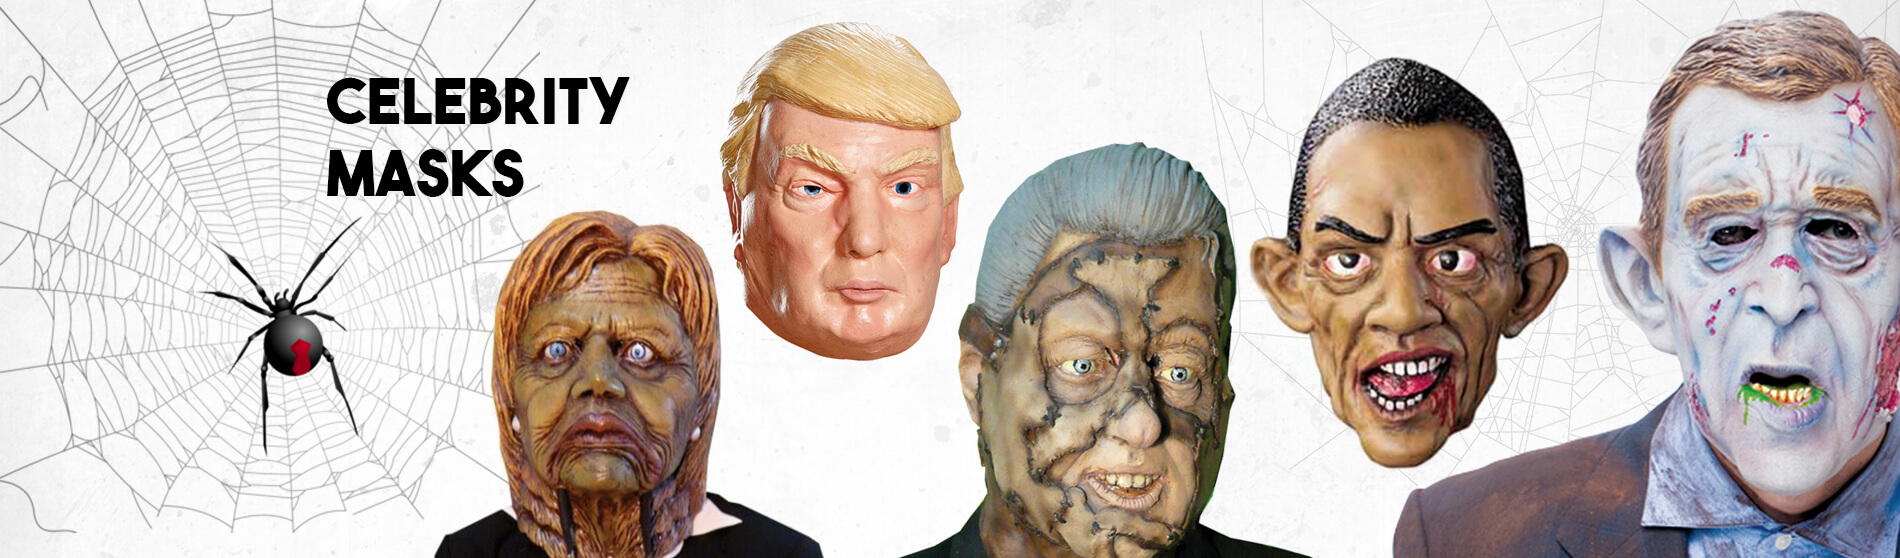 Glendale Halloween : Celebrity-Masks